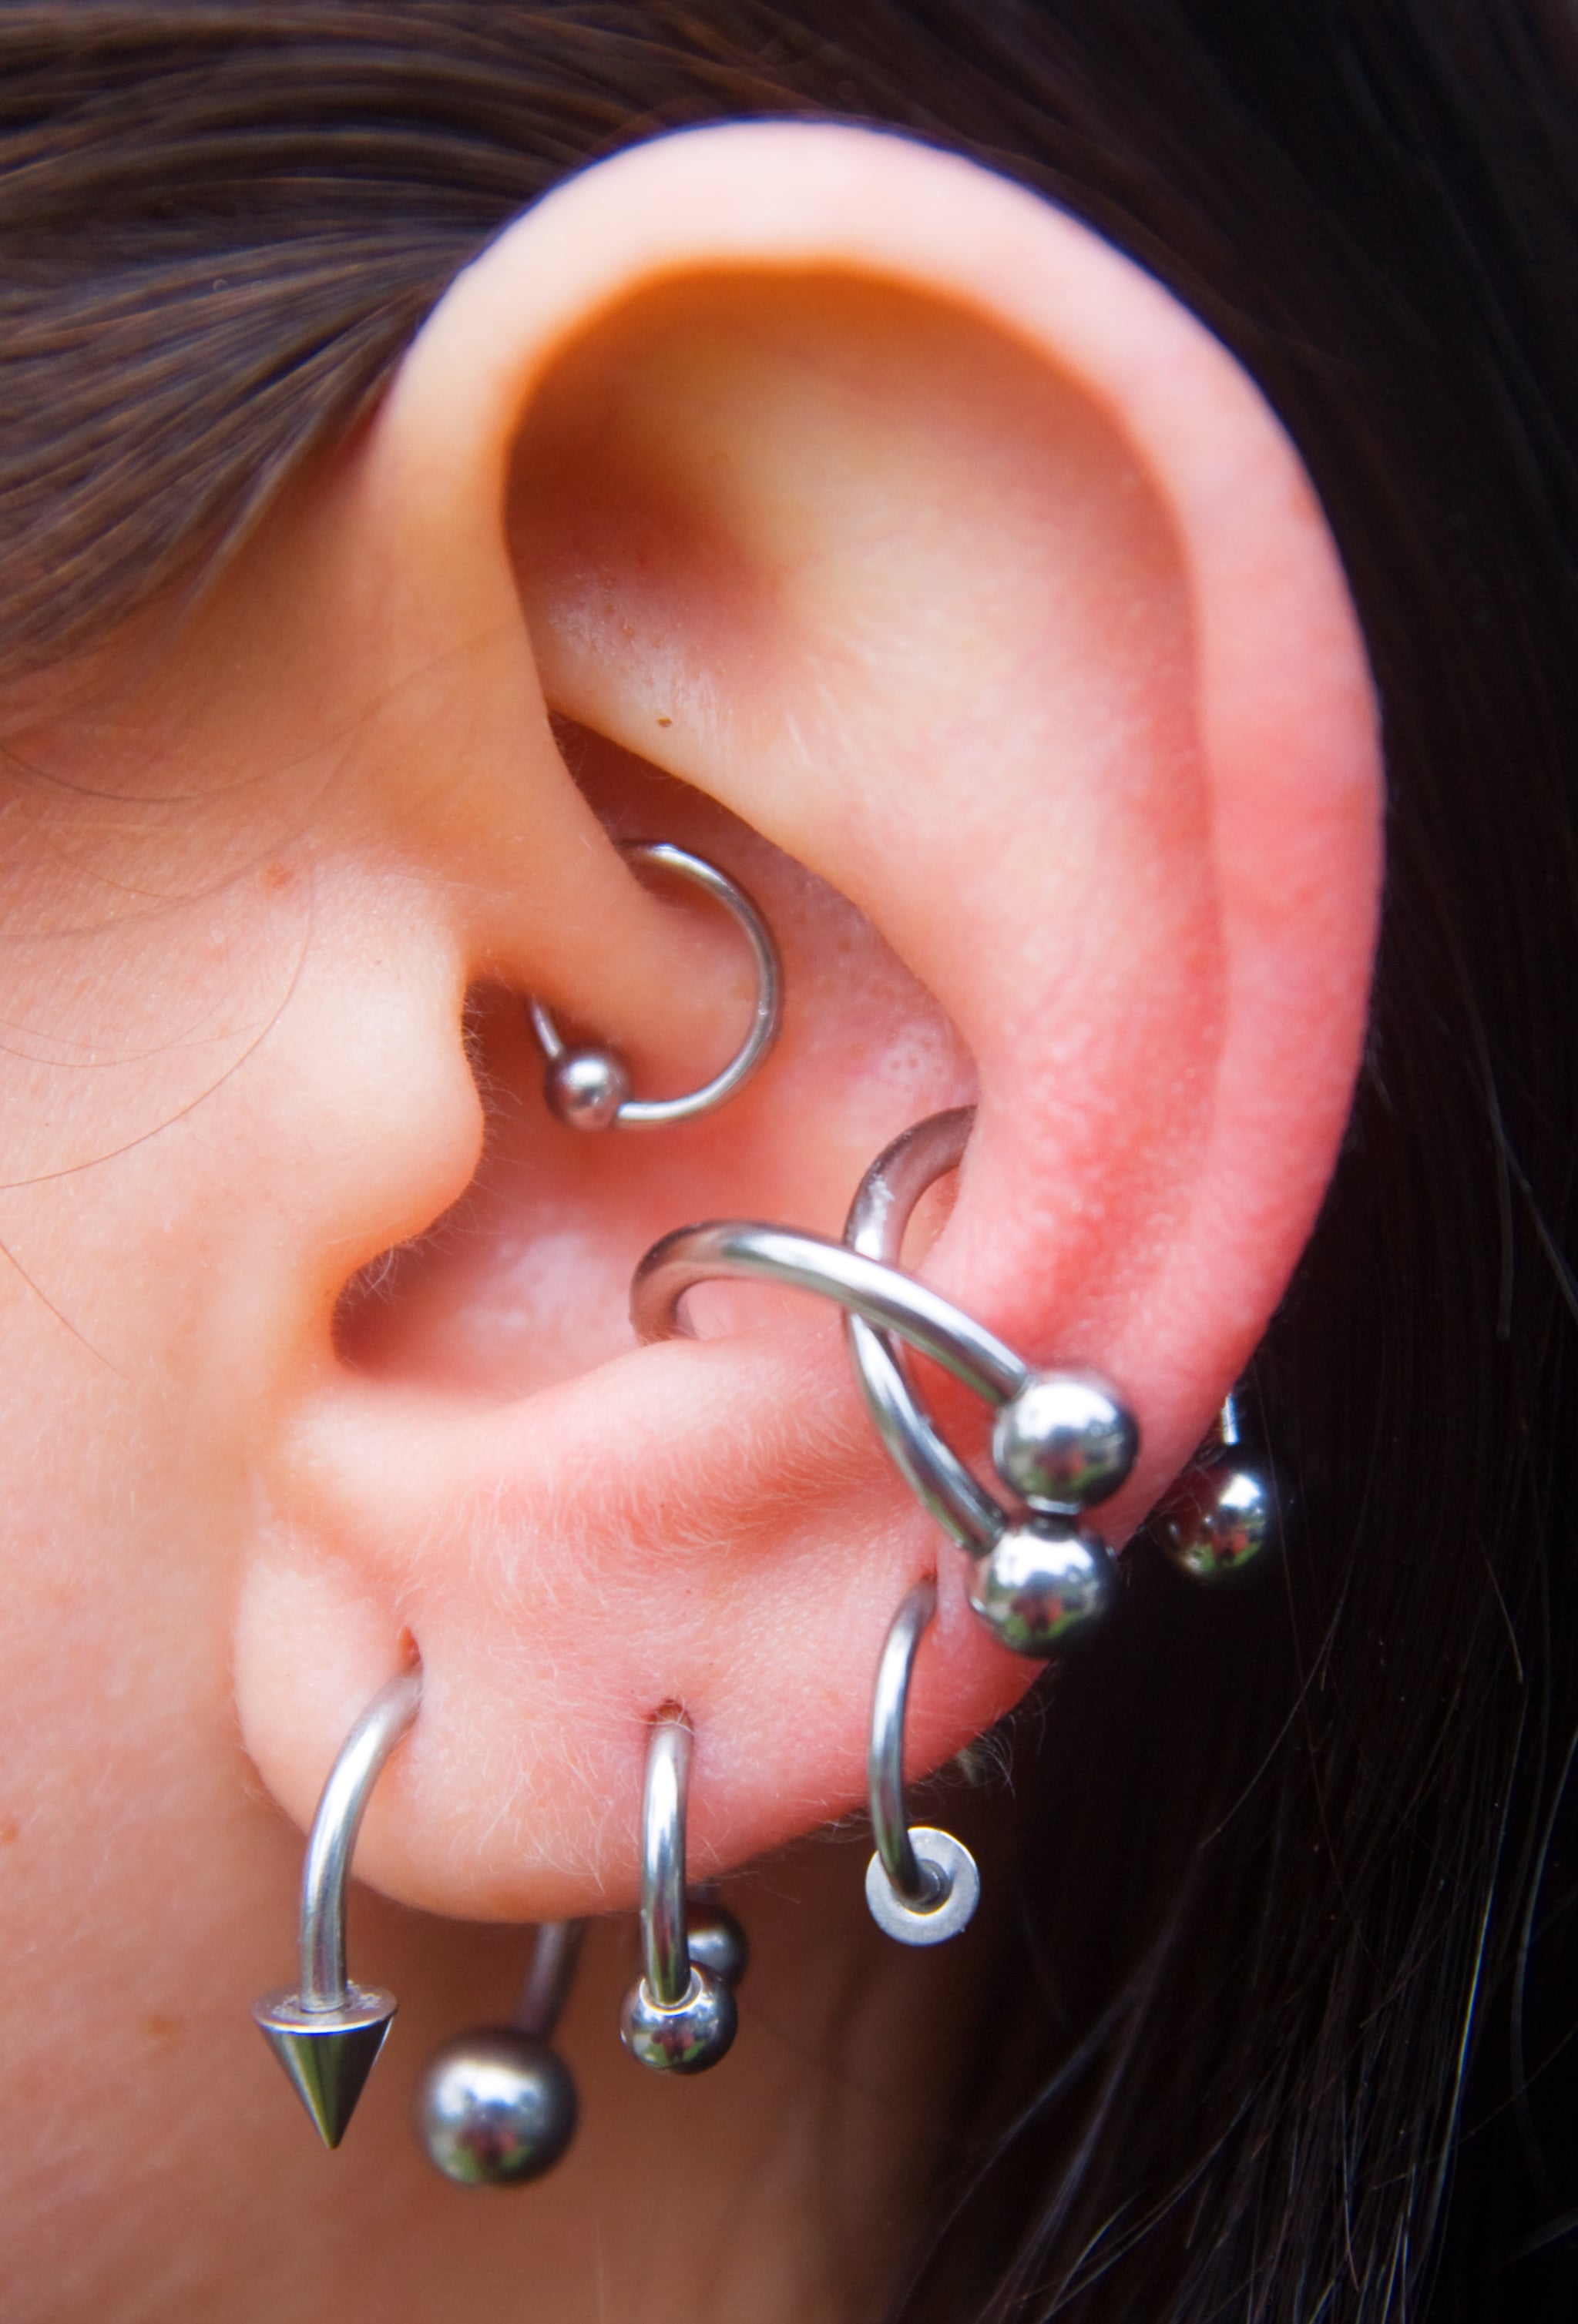 Lesbian ear piercings